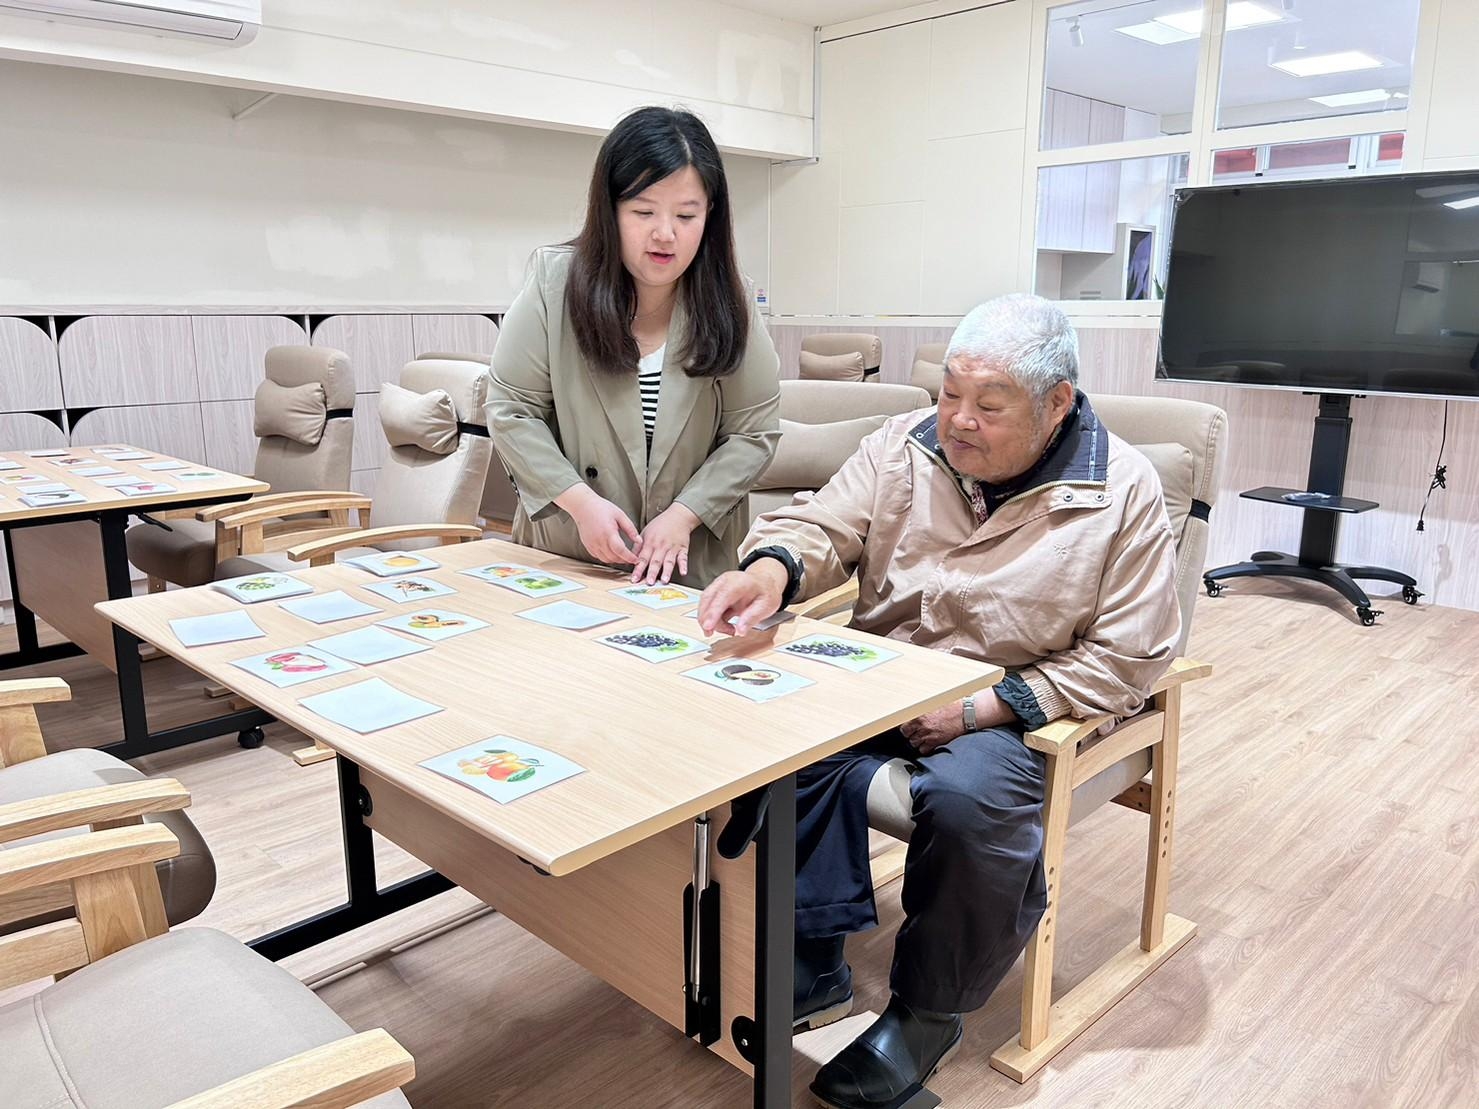 冬山鄉八寶社區轉型為日間照顧中心 為高齡長者提供安老場所